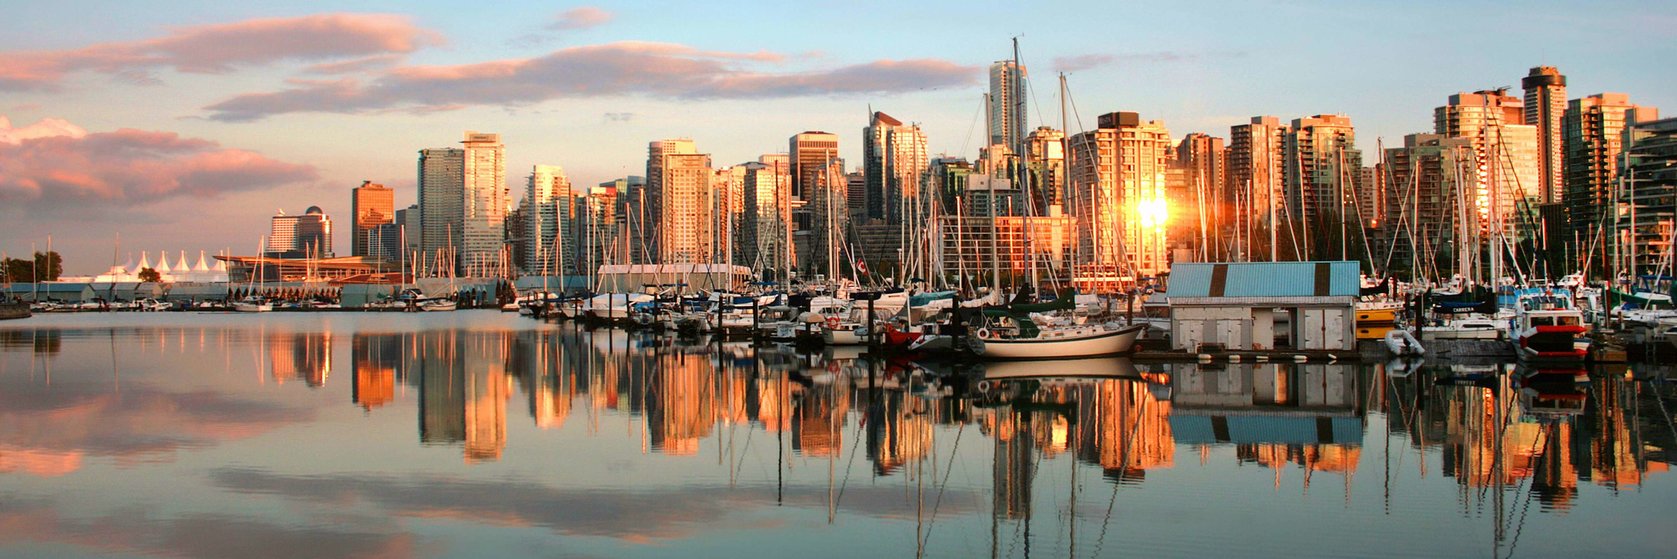 Dovolená Britská Kolumbie - Vancouver